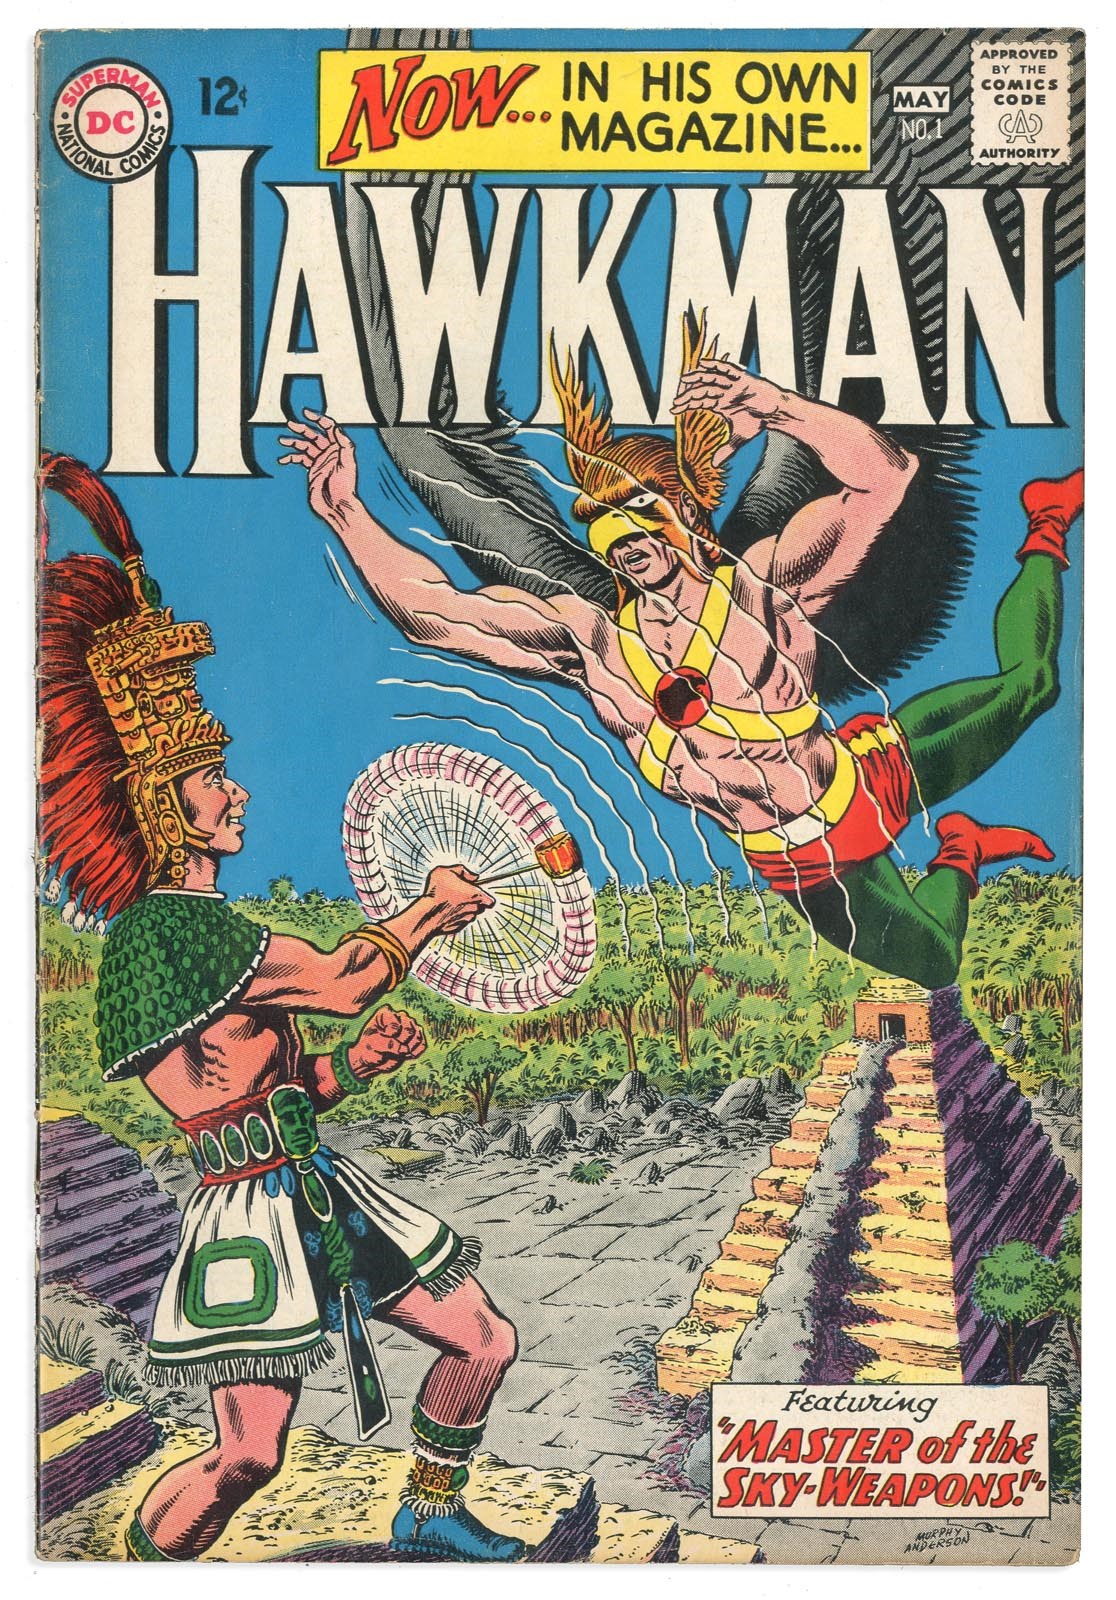 Rock And Pop Culture - 1964 Hawkman #1 Comic Book